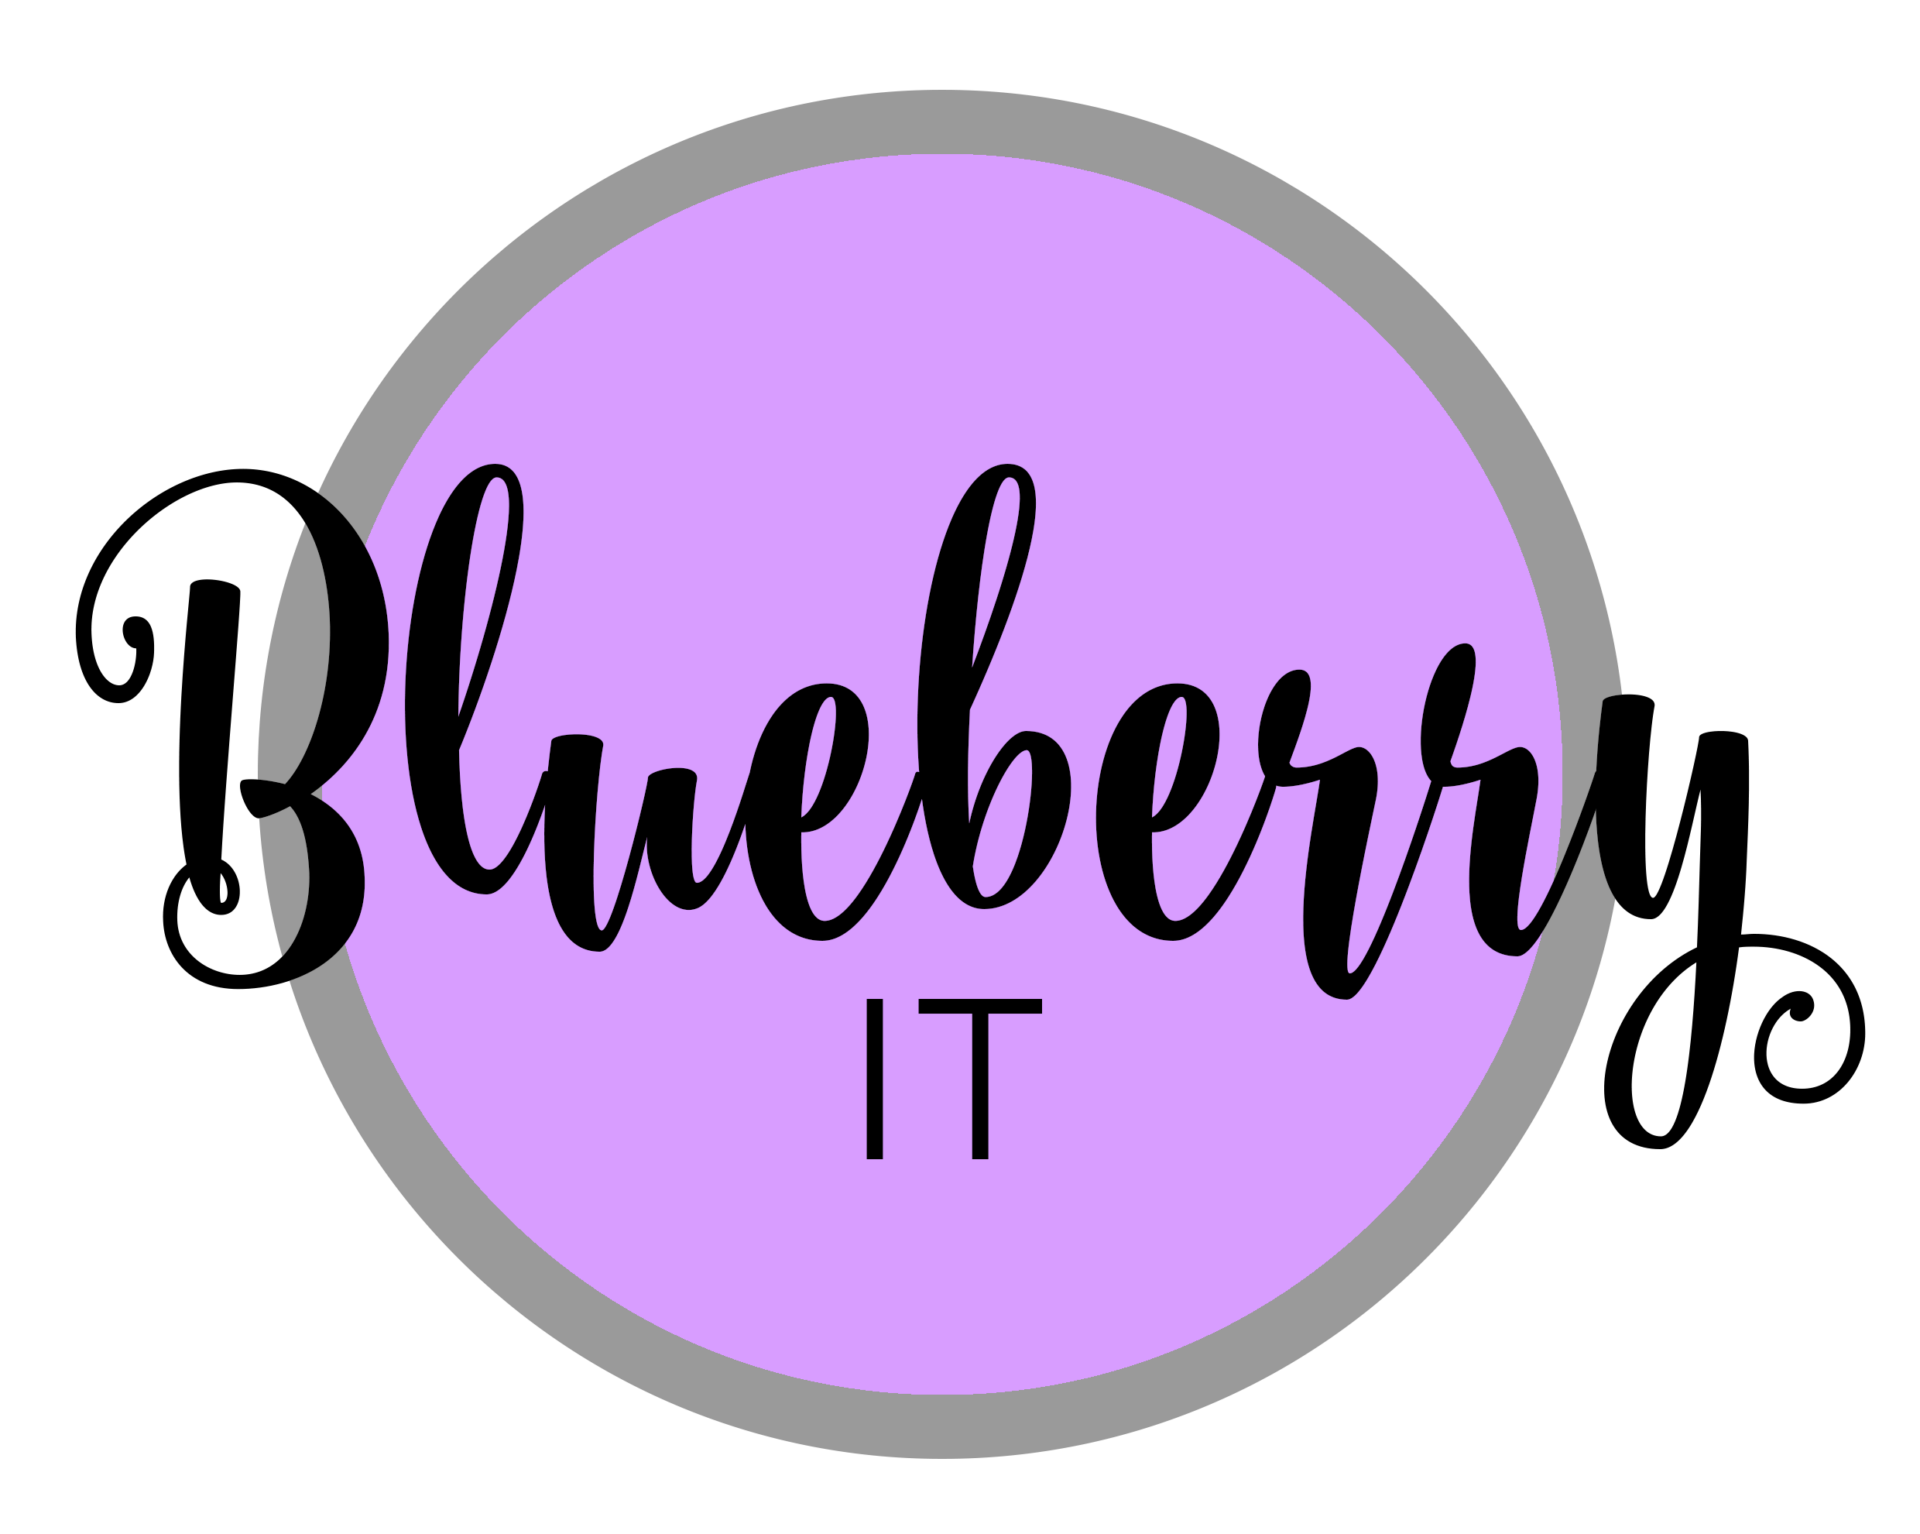 (c) Blueberry-it.net